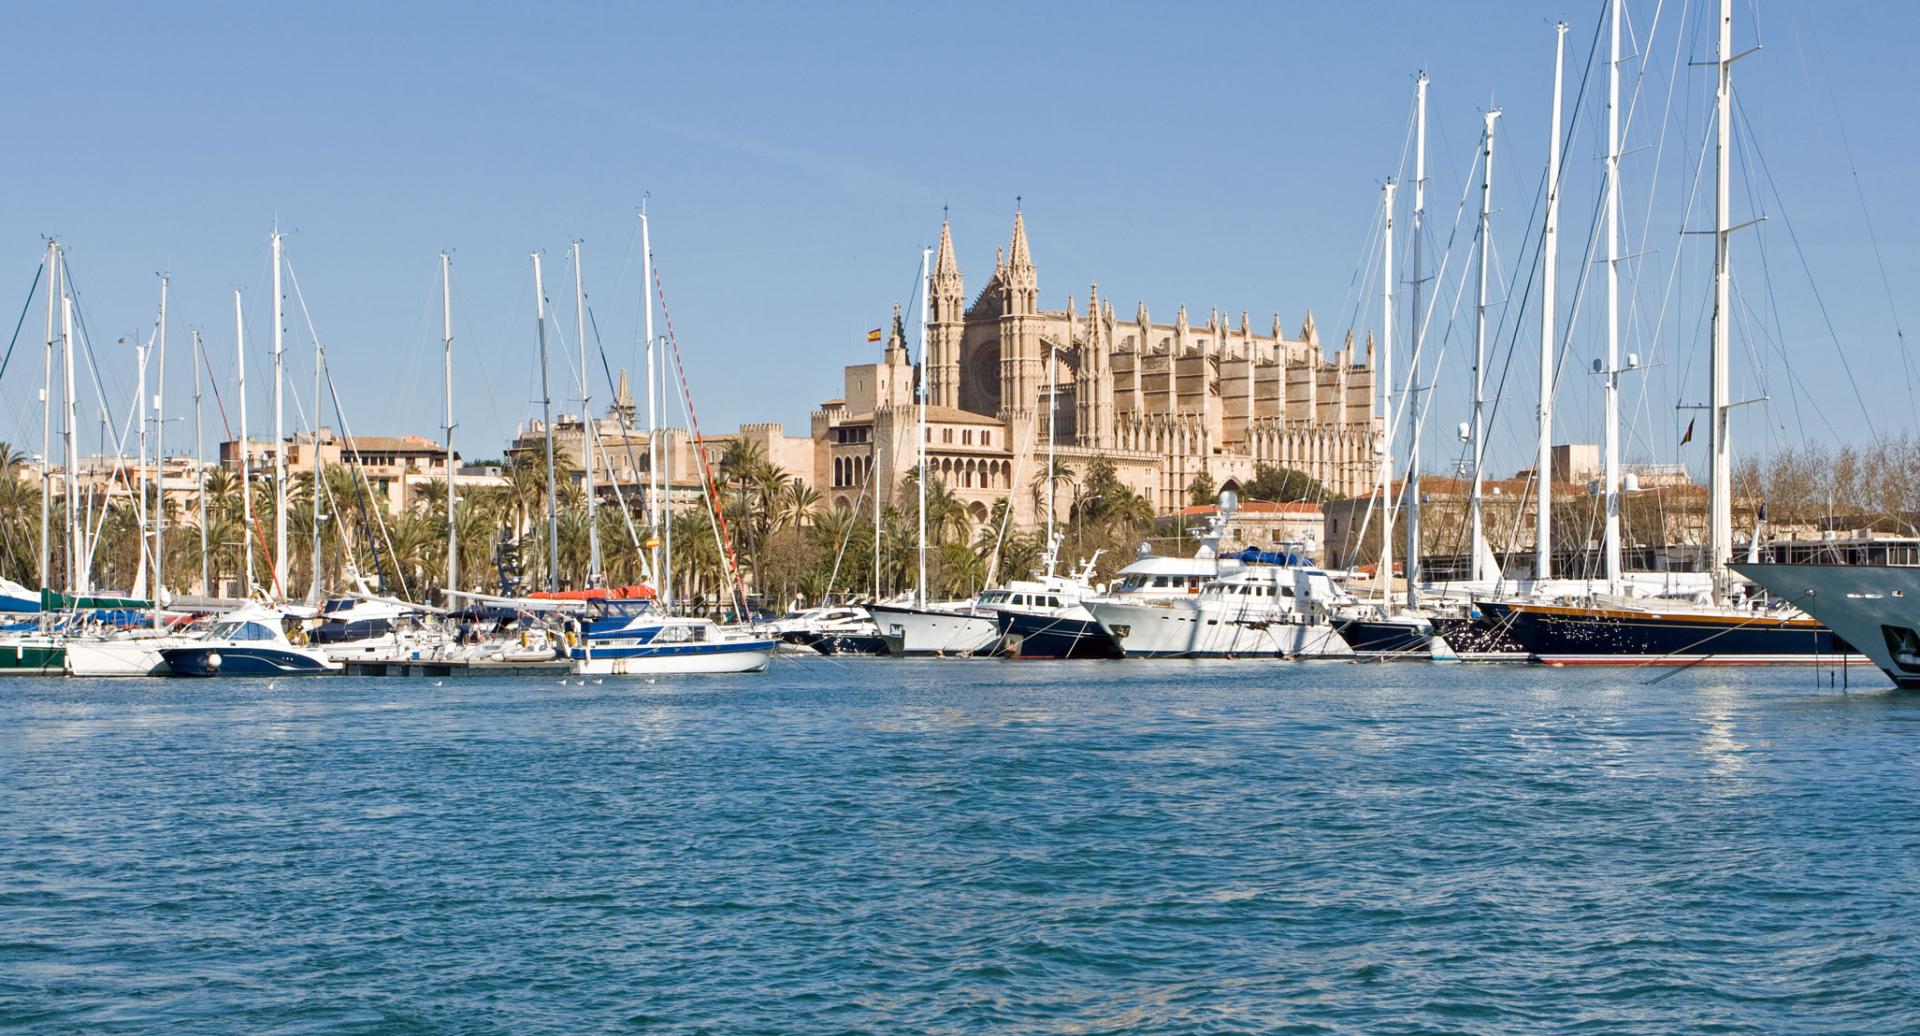 Creuers amb catamarà a la Badia de Palma amb un plus d'exclusivitat